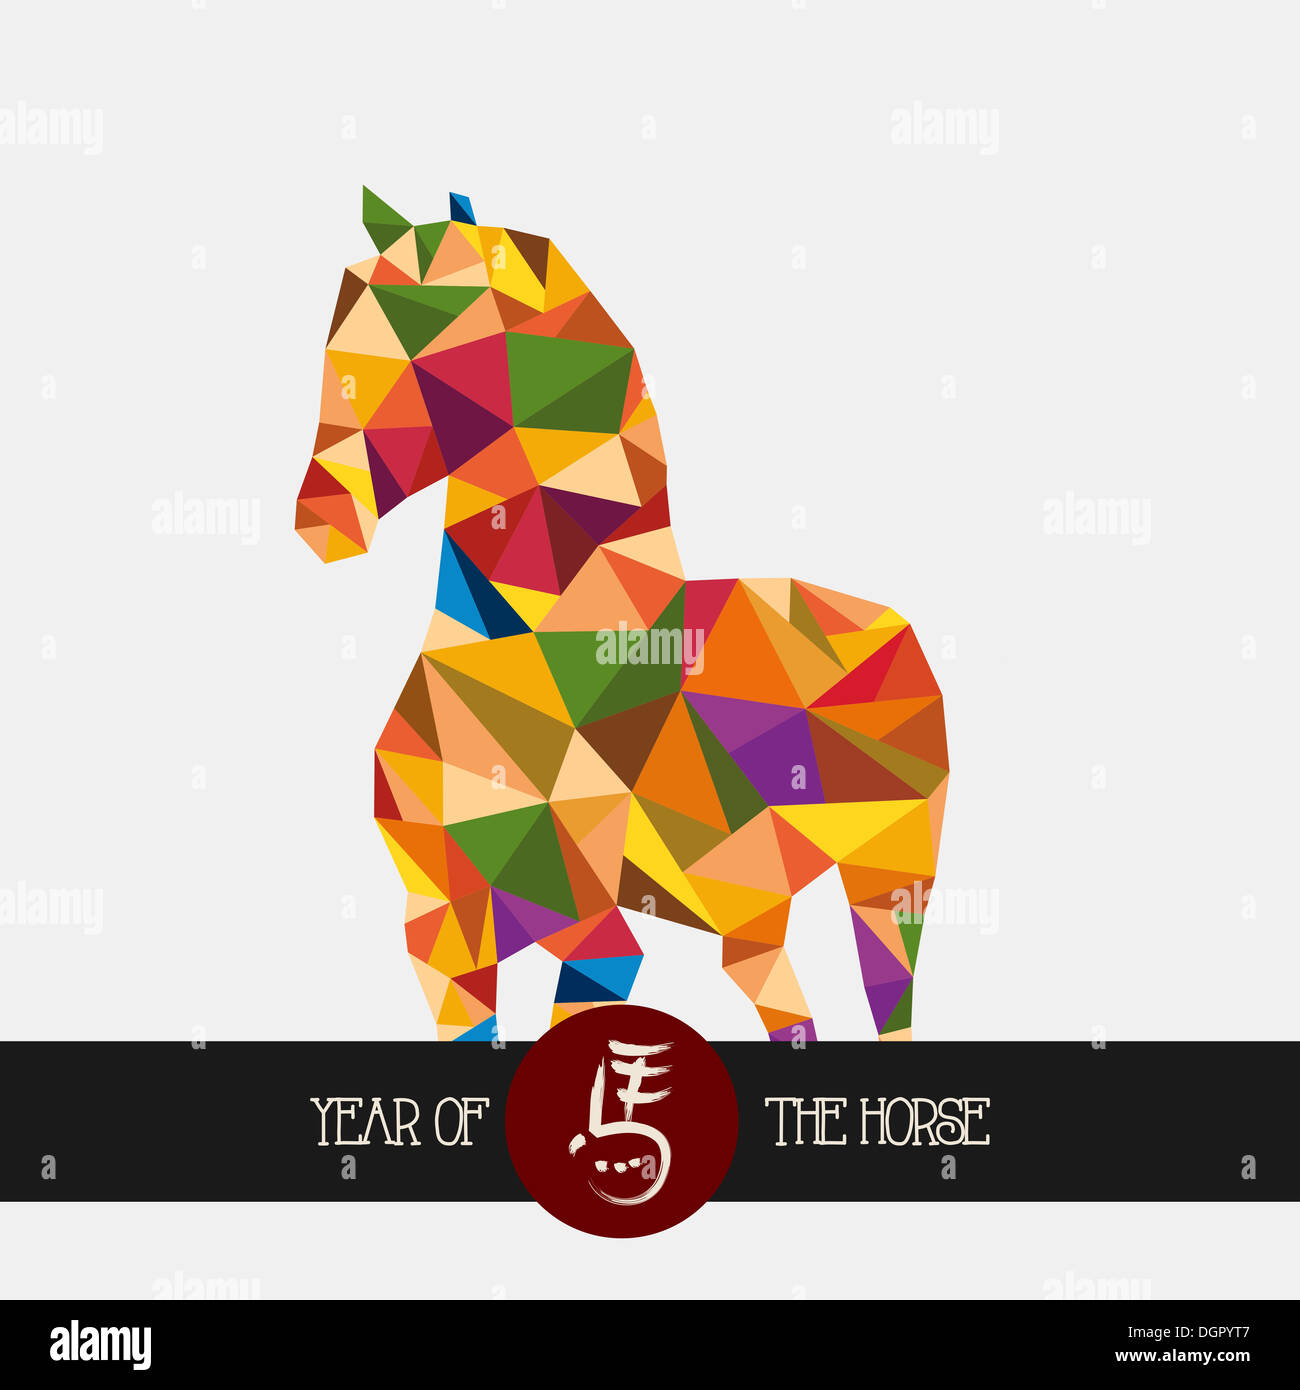 Nouvel An chinois 2014 de l'illustration résumé moderne. Vecteur EPS10. Banque D'Images